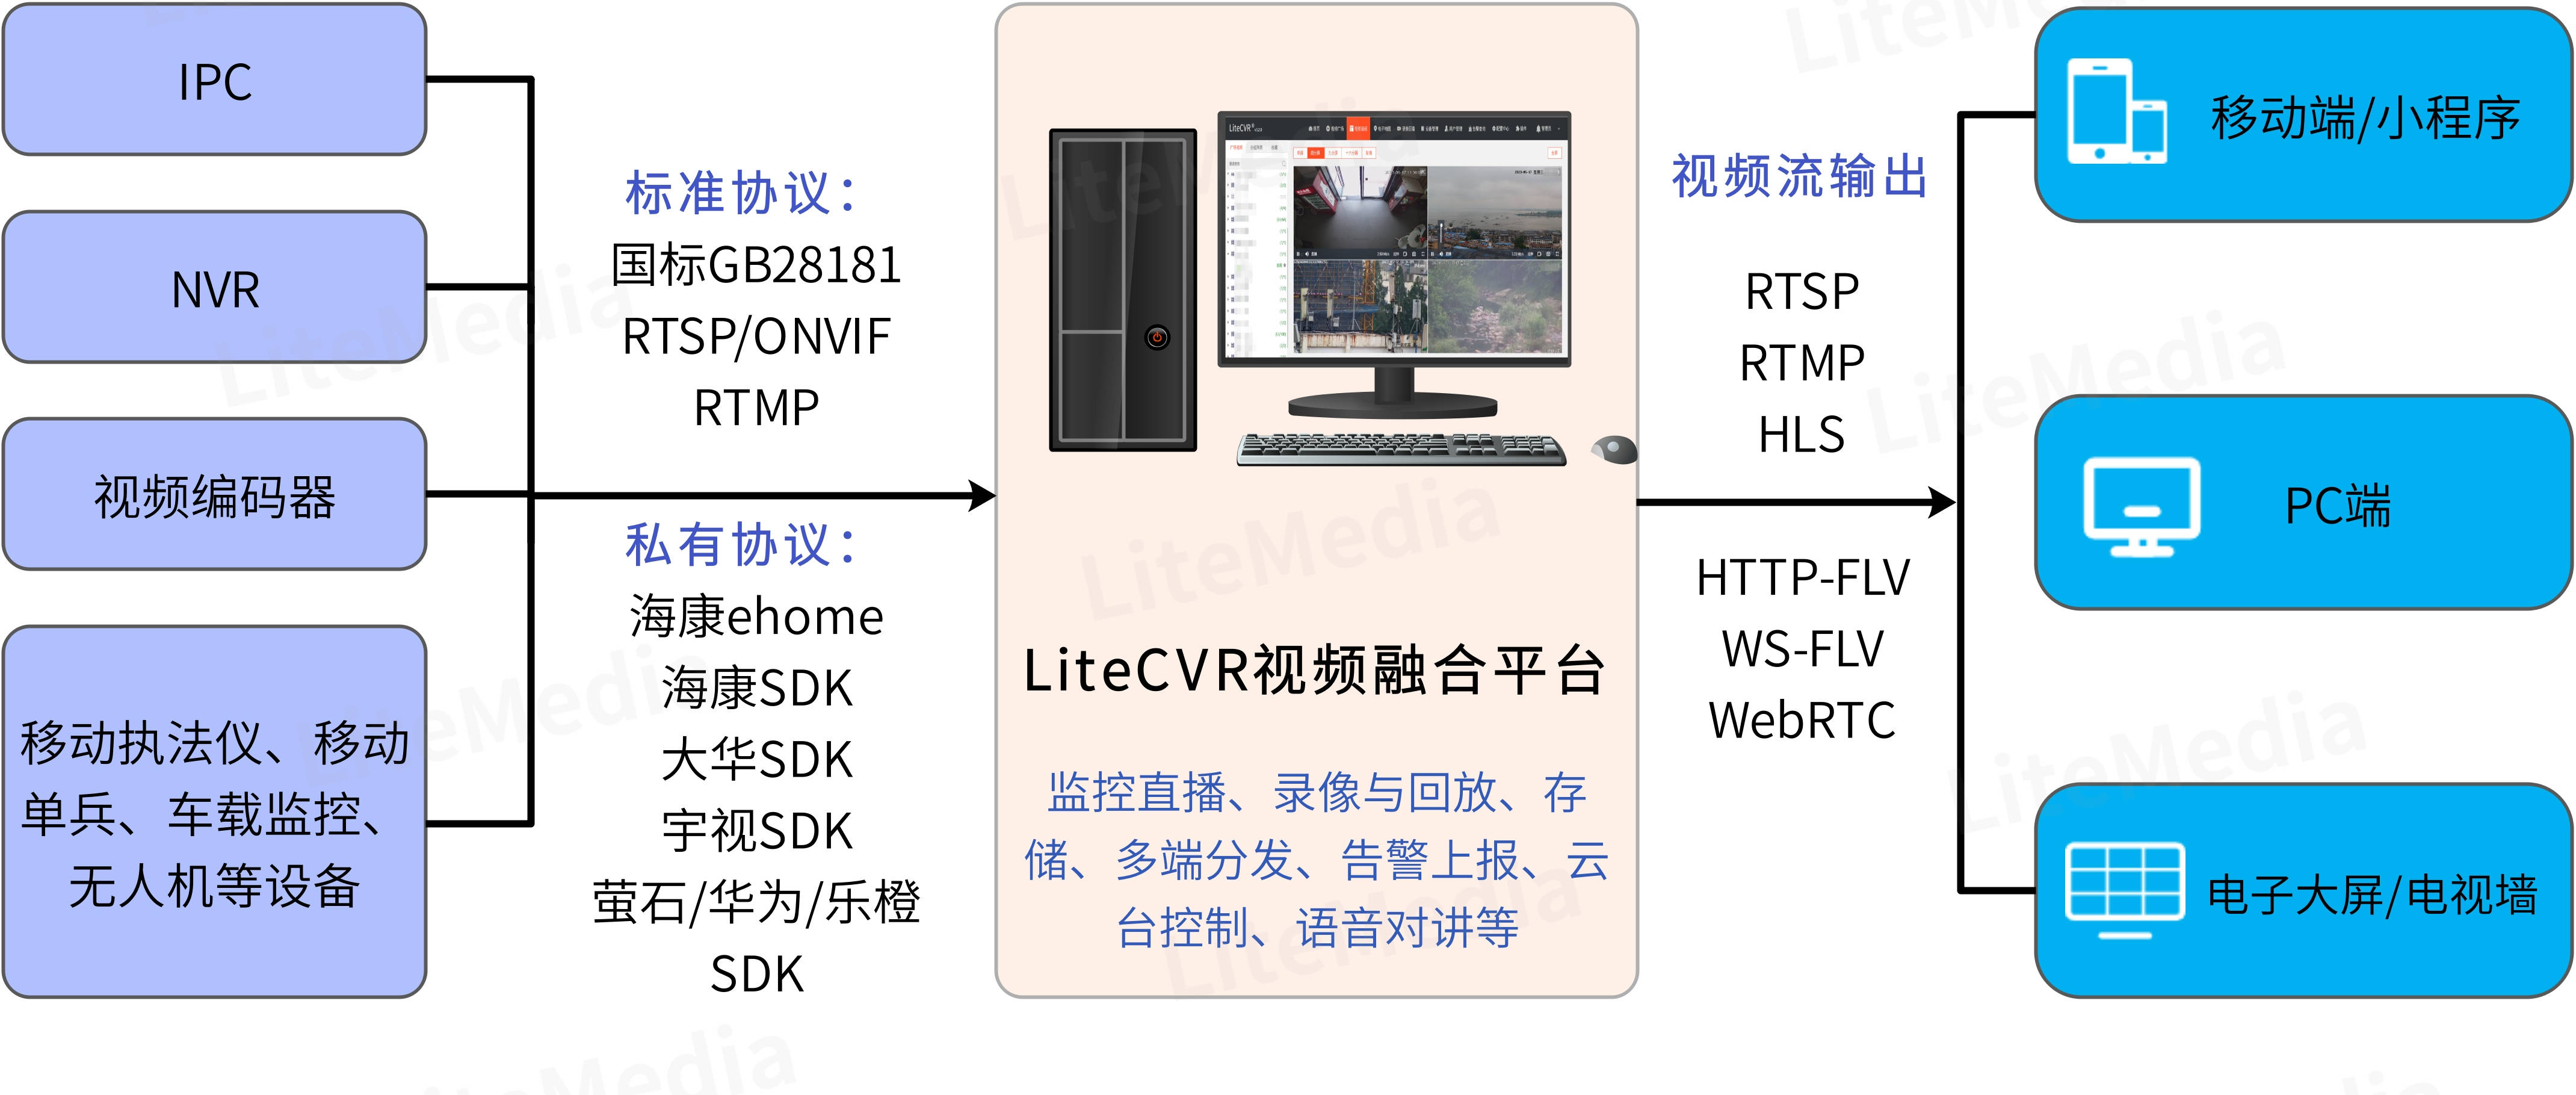 使用RTMP推流到安防监控平台LiteCVR，FLV视频无法播放的原因排查_开发语言